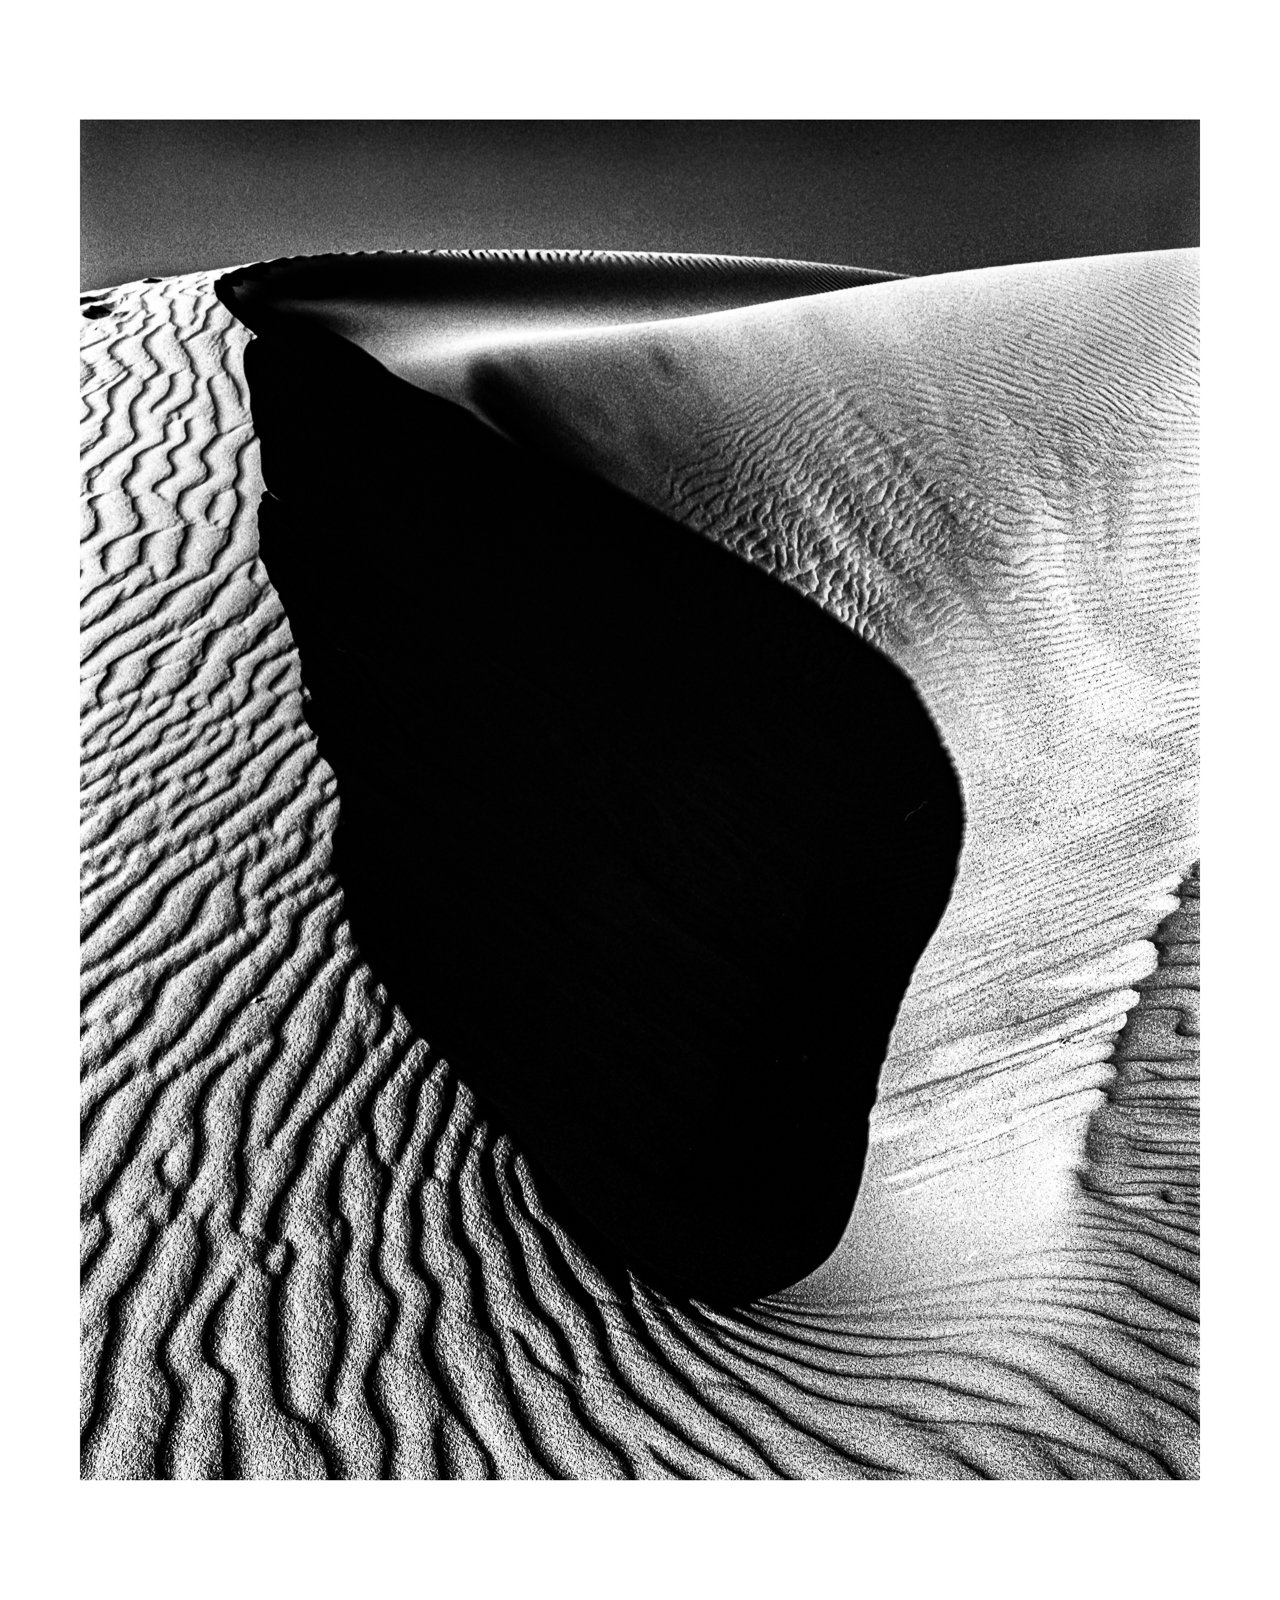 The Dunes 02